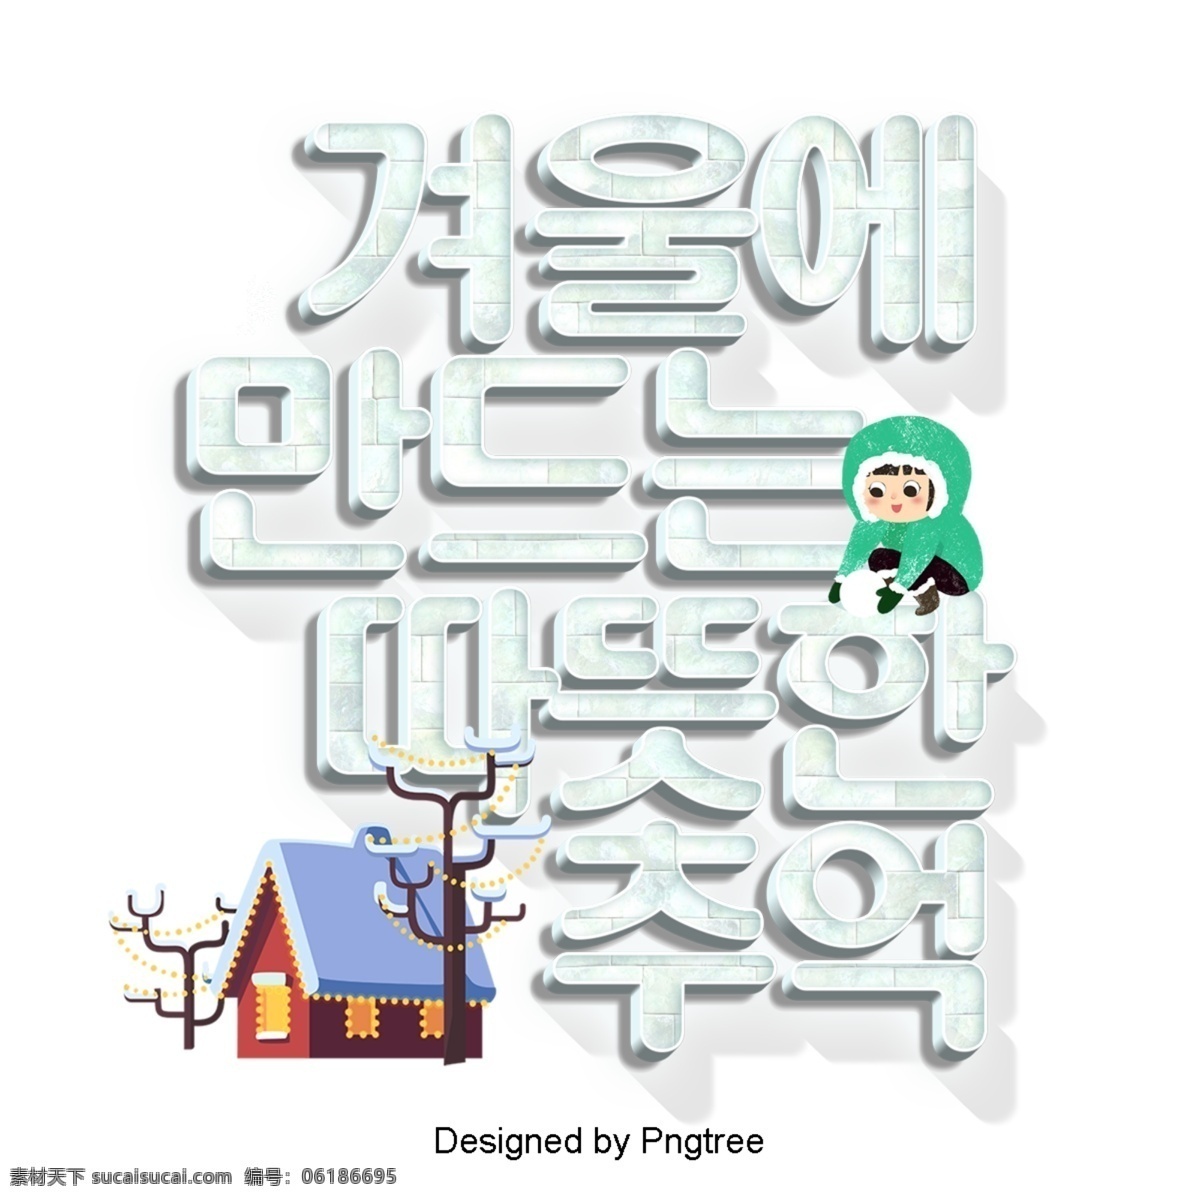 冬天 一个 温暖 回忆 以及 韩国 卡通 场景 ai材料 分子 现场 字形 现代 时尚 动画片 冬季 结构体 全球